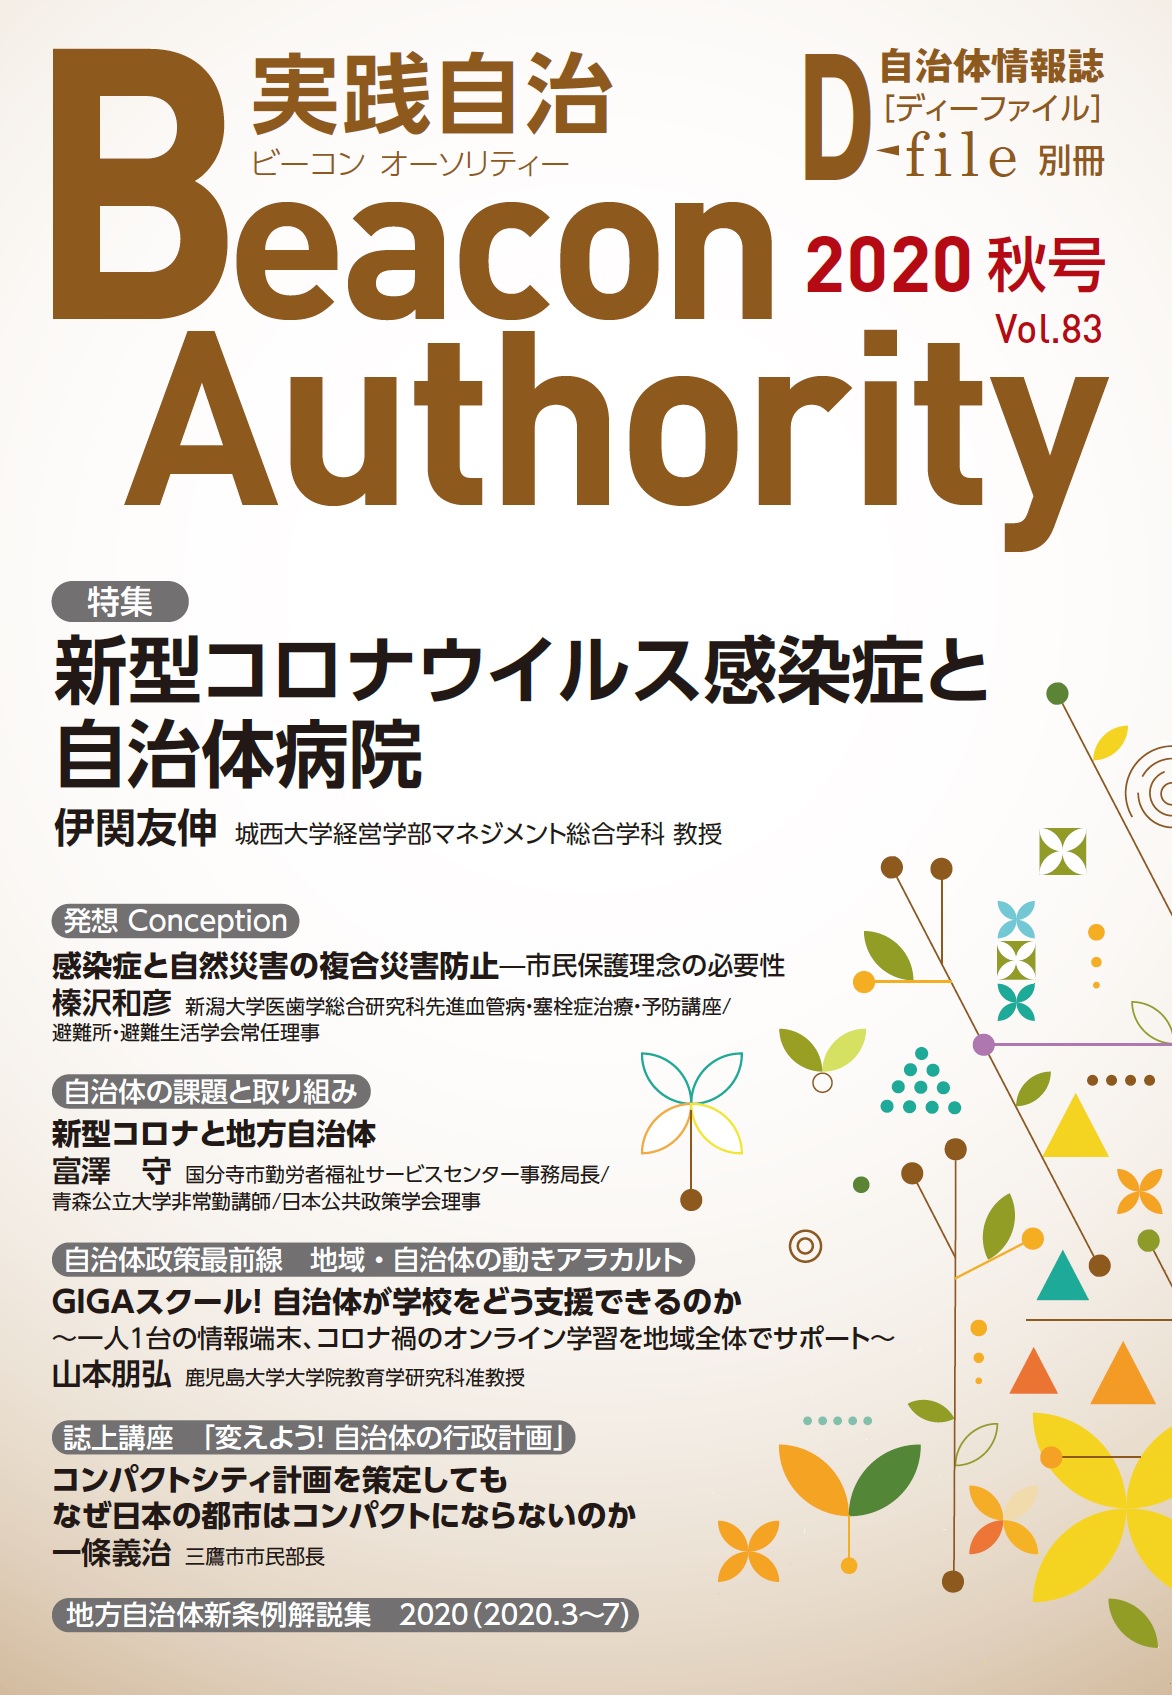 実践自治Beacon Authority Vol.83 秋号　発行しました。